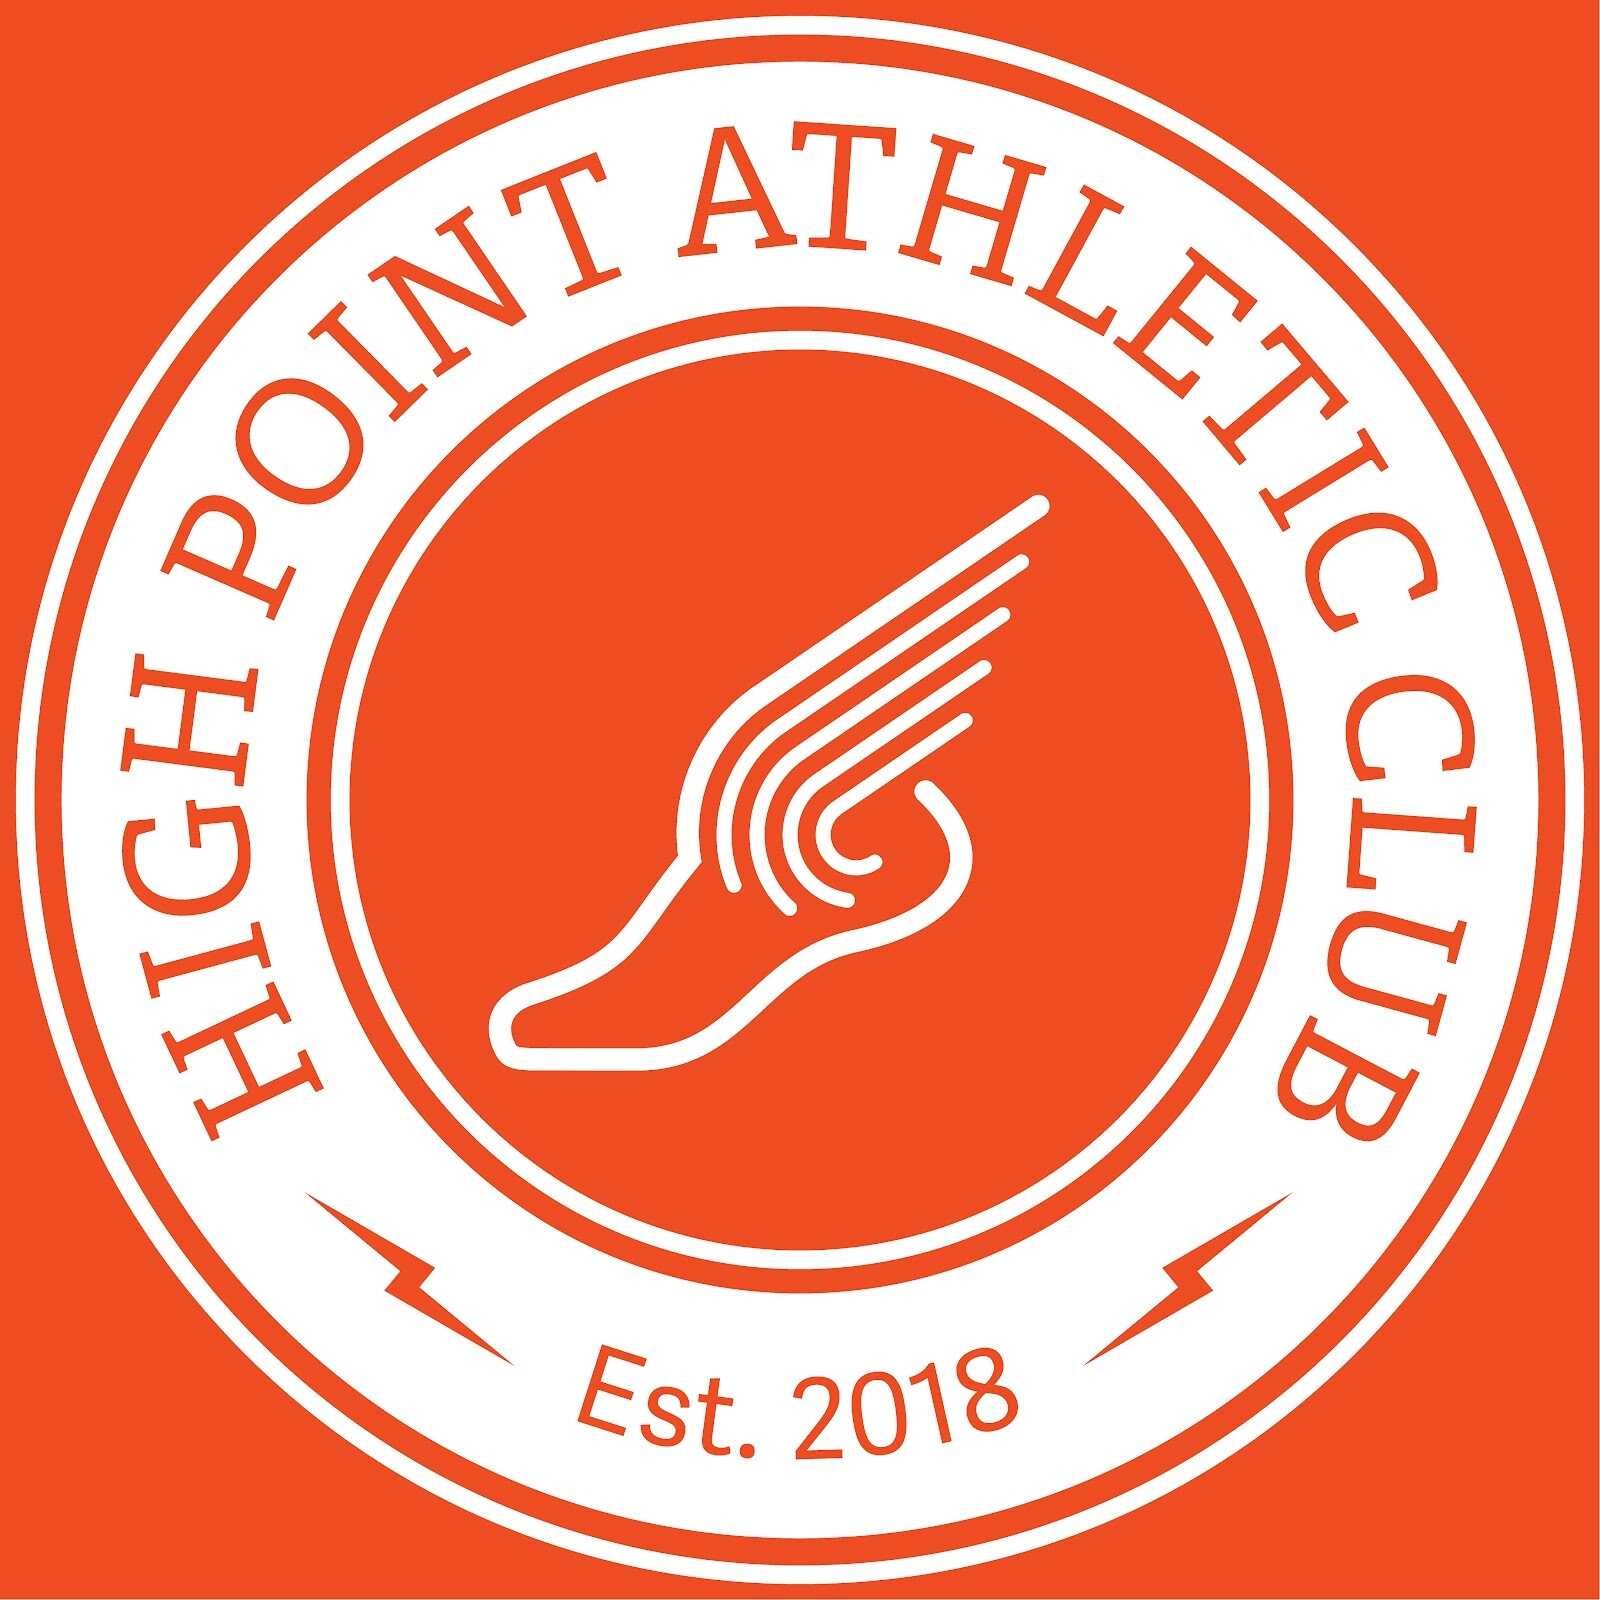 High Point Athletic Club